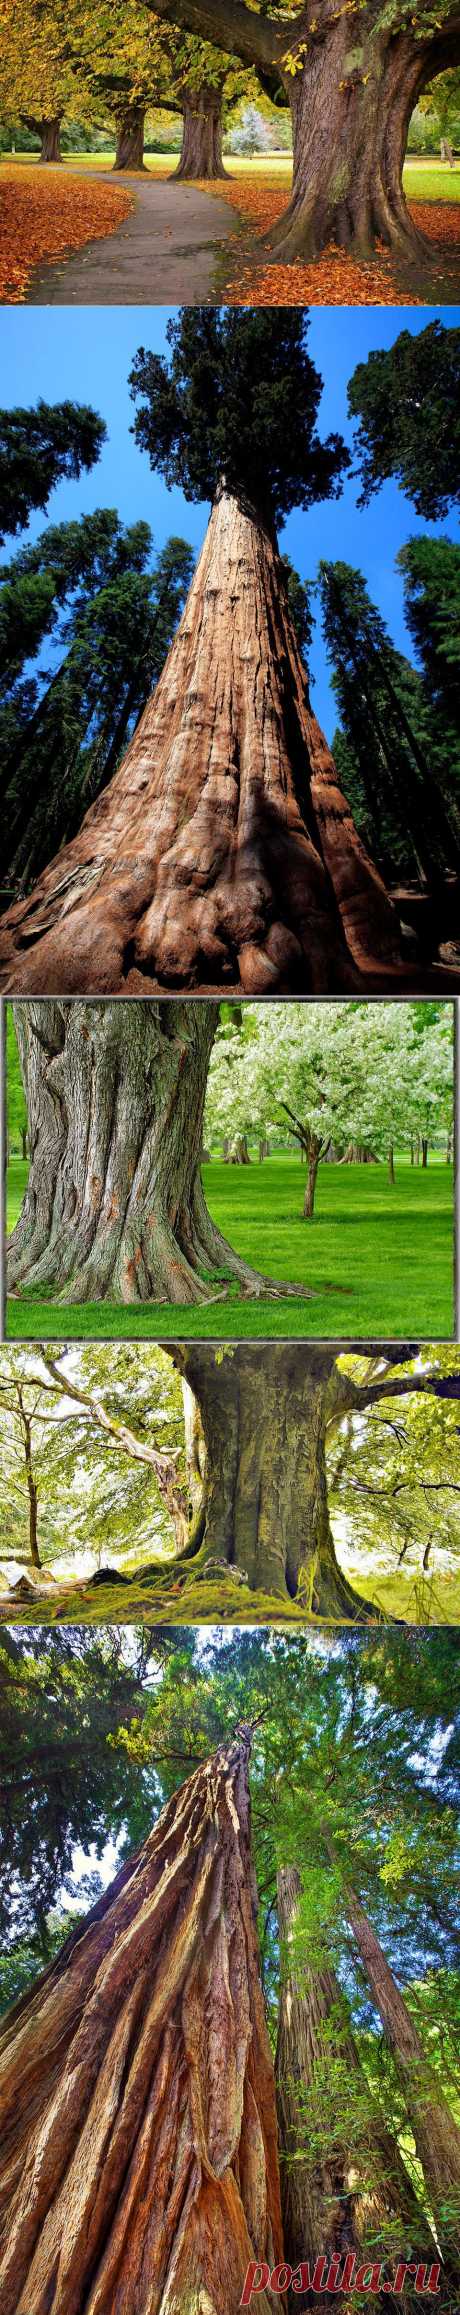 Самые необычные деревья в мире | Newpix.ru - позитивный интернет-журнал